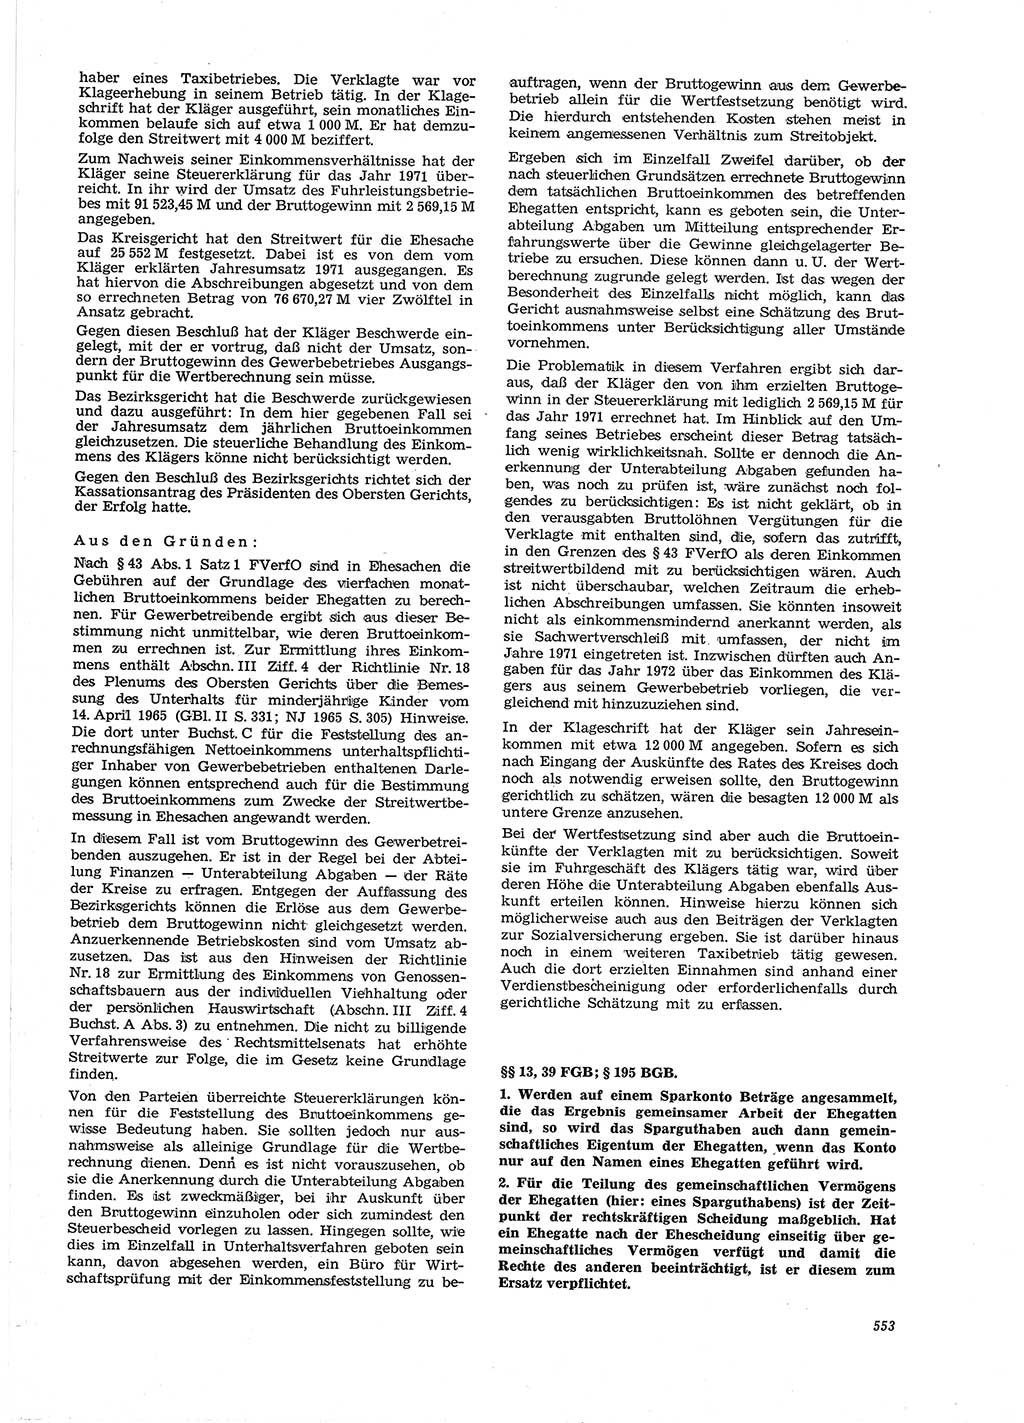 Neue Justiz (NJ), Zeitschrift für Recht und Rechtswissenschaft [Deutsche Demokratische Republik (DDR)], 27. Jahrgang 1973, Seite 553 (NJ DDR 1973, S. 553)